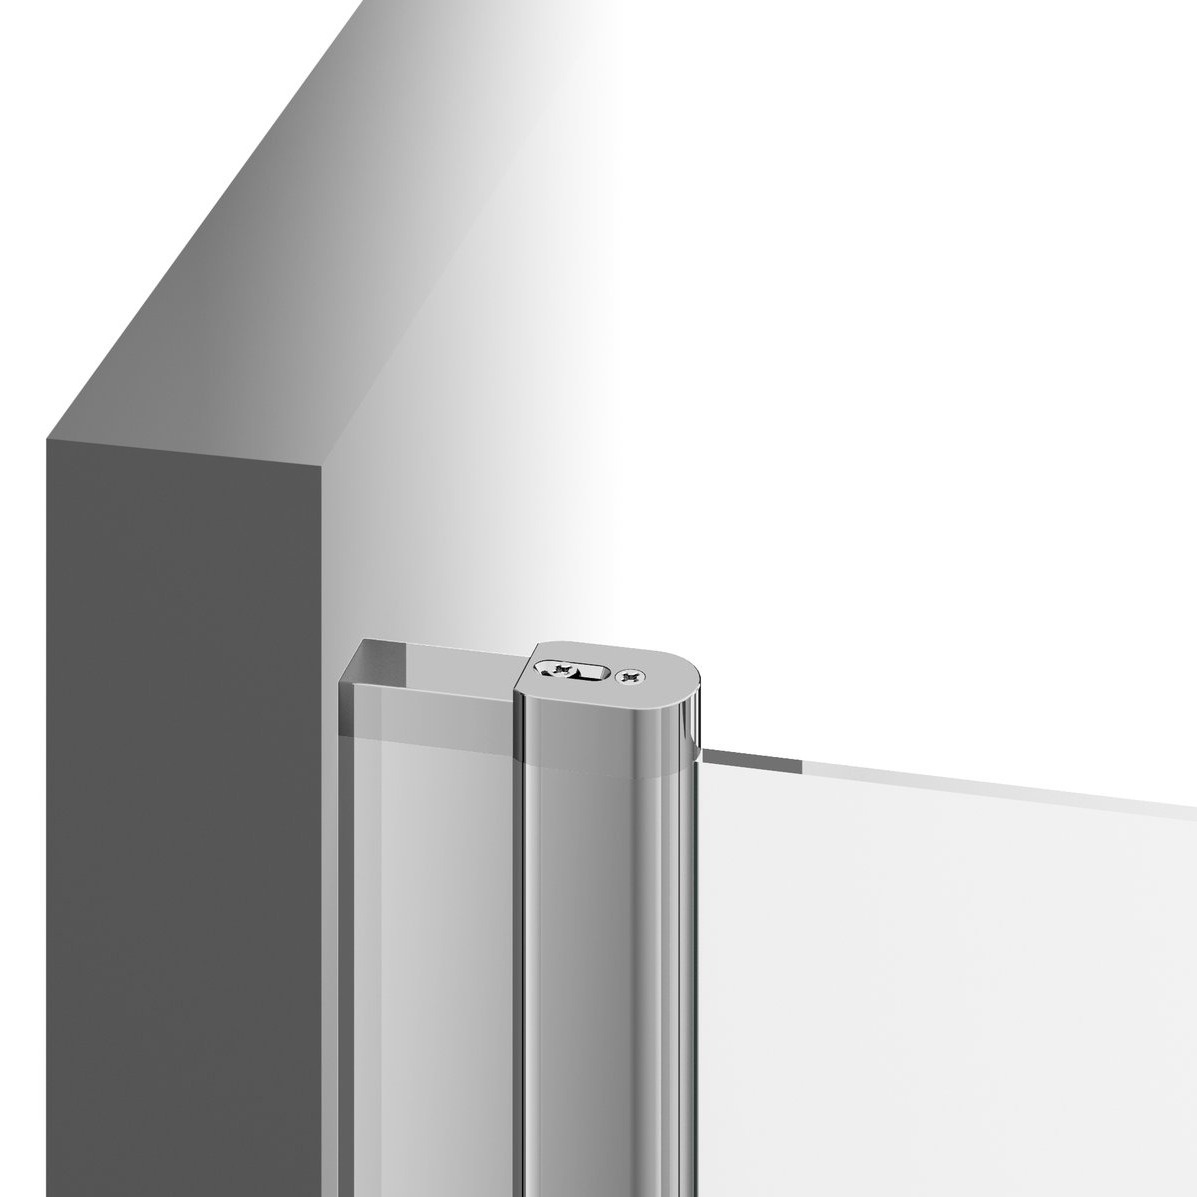 Дверь стеклянная для душевой ниши универсальная распашная двухсекционная RAVAK CHROME CSD2-100 195x100см прозрачное стекло 6мм профиль хром 0QVACC00Z1